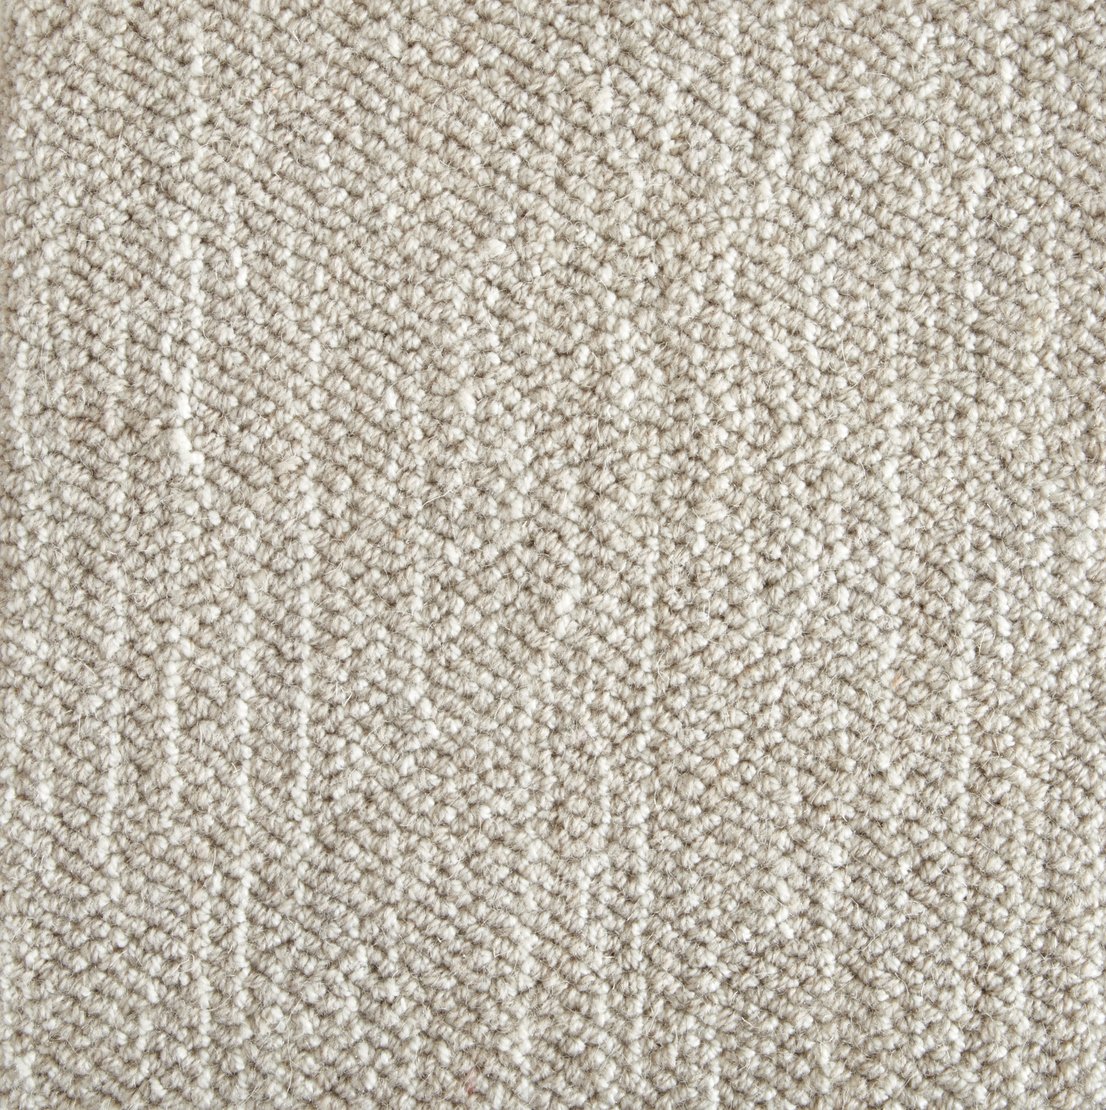 Stanton Carpet Dixon Dark Taupe - Discount Pricing | TrueHardwoods.com